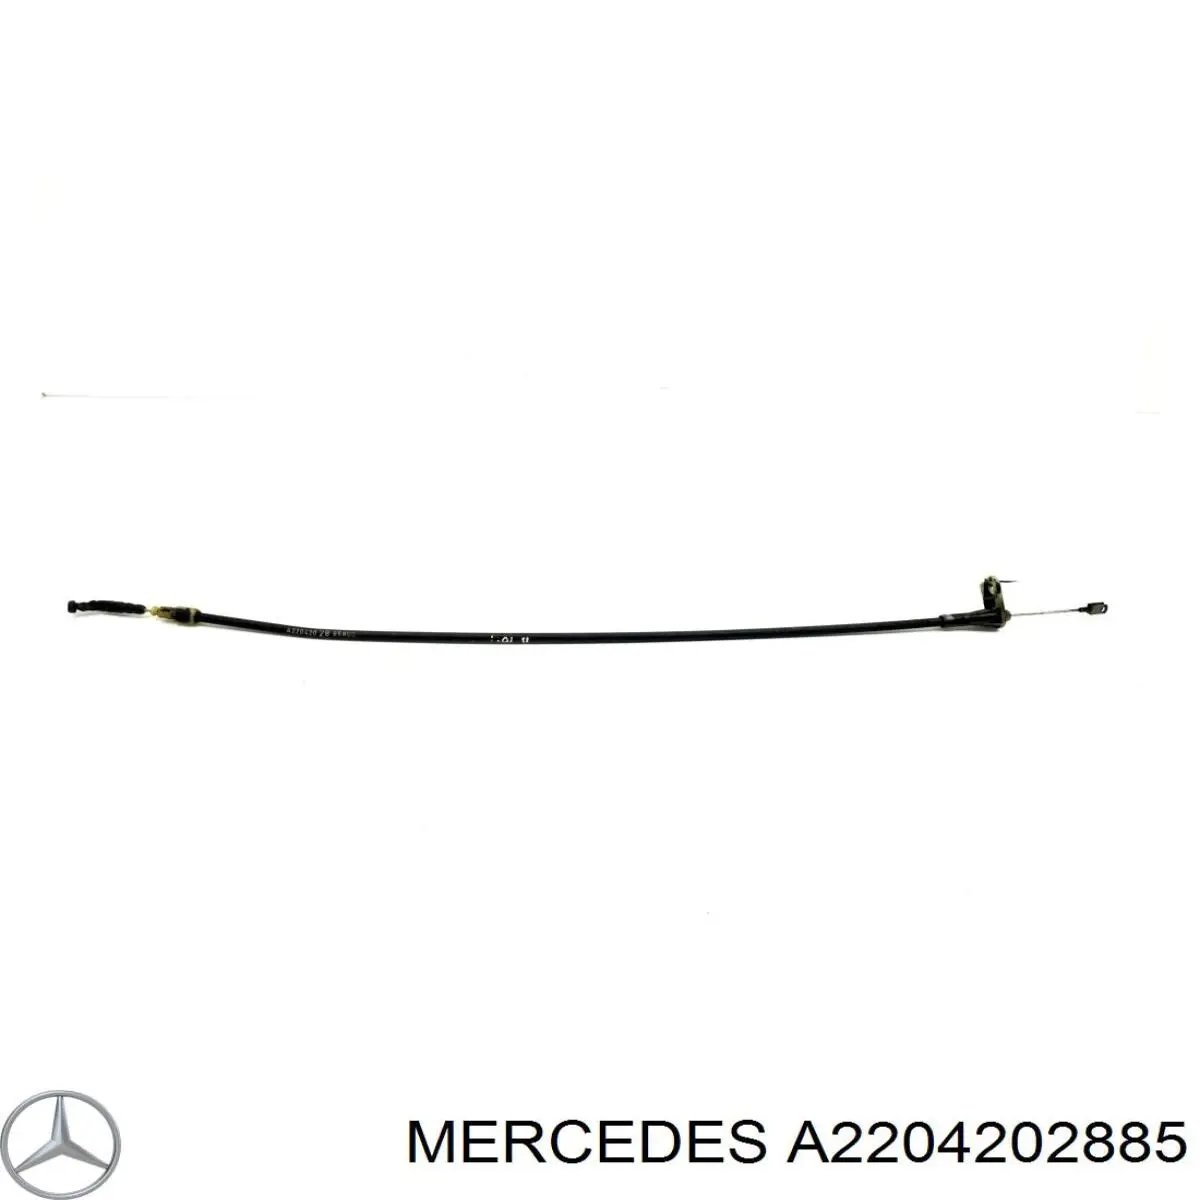 A2204202885 Mercedes трос ручного тормоза задний правый